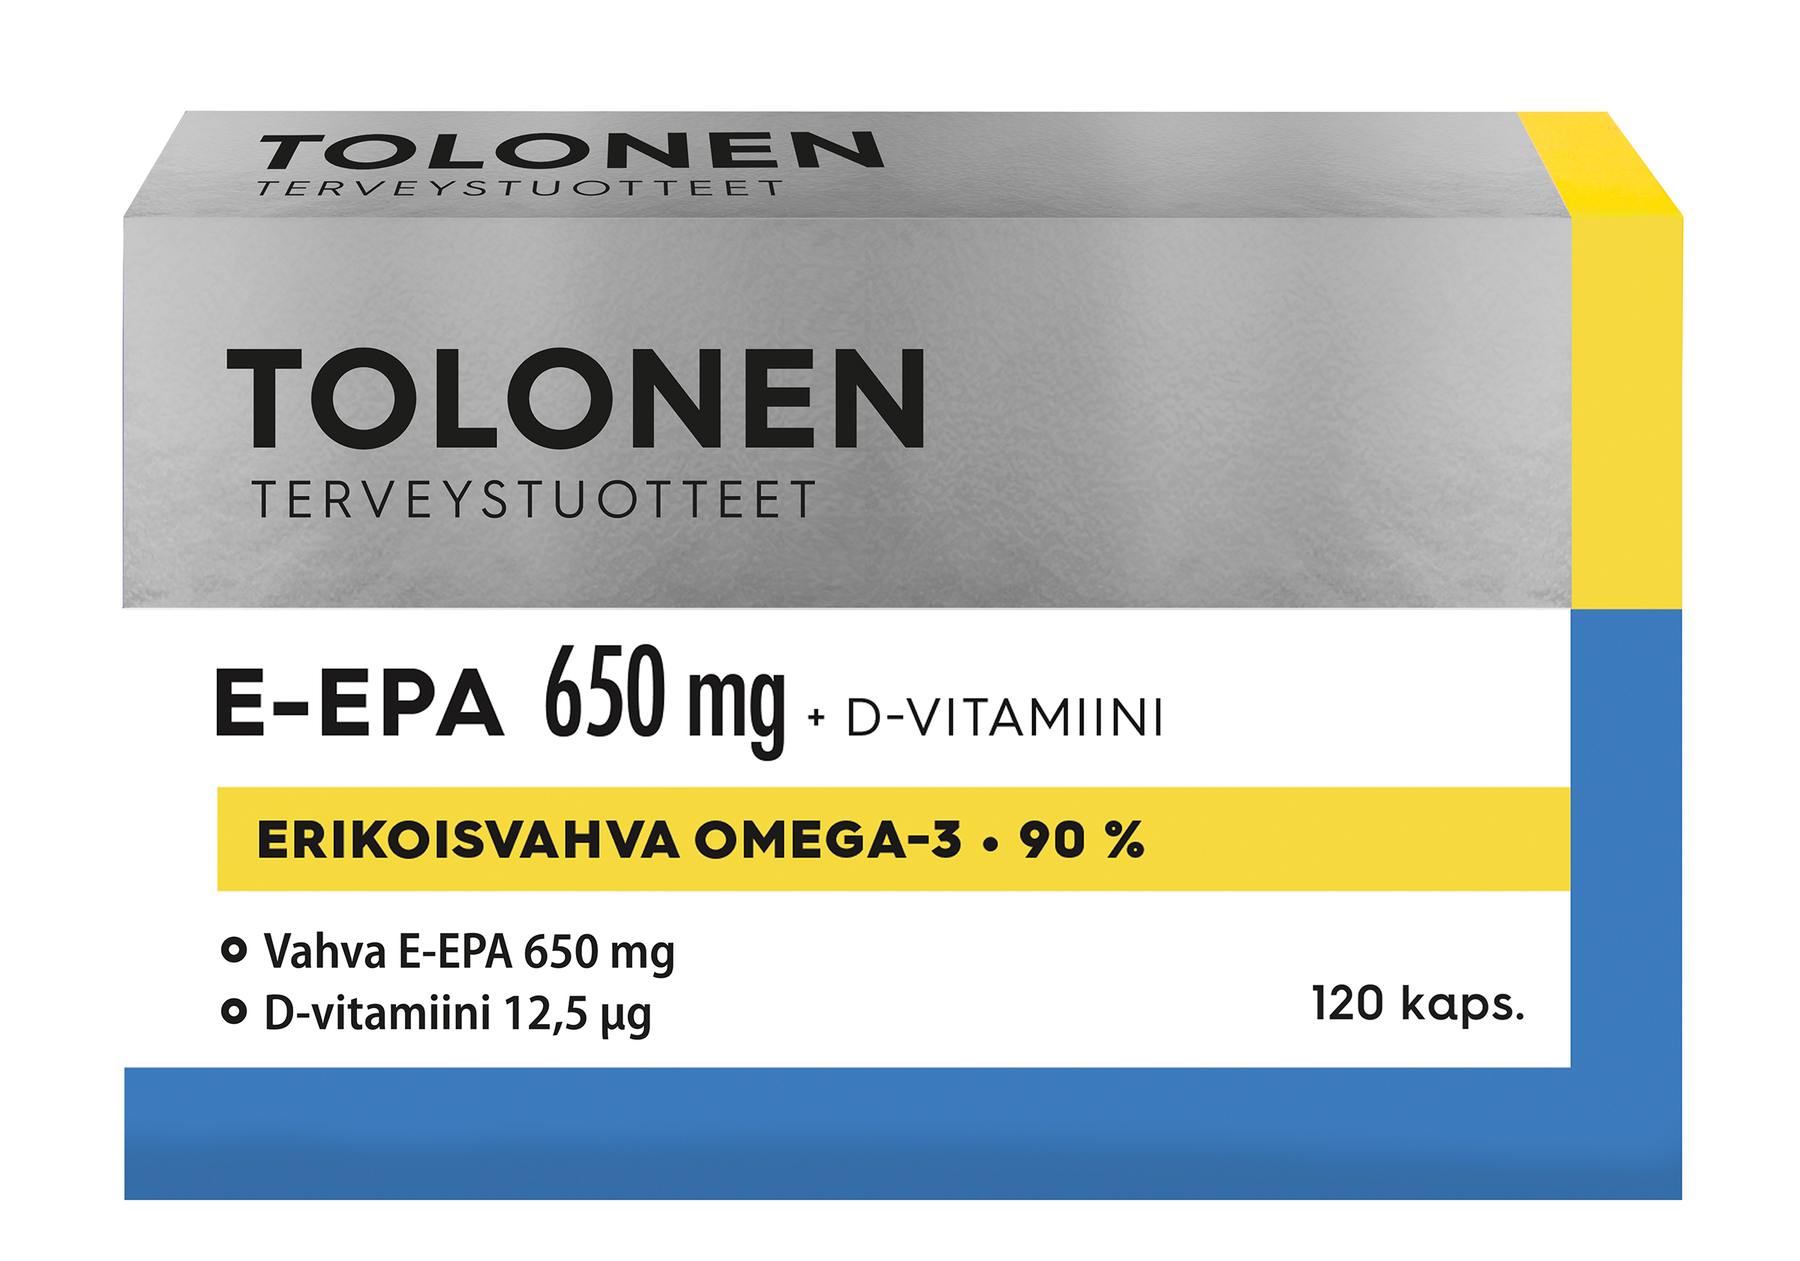 Tolonen E-EPA 650 mg + D-vitamiini 120 kaps. - Päiväys 02/2024